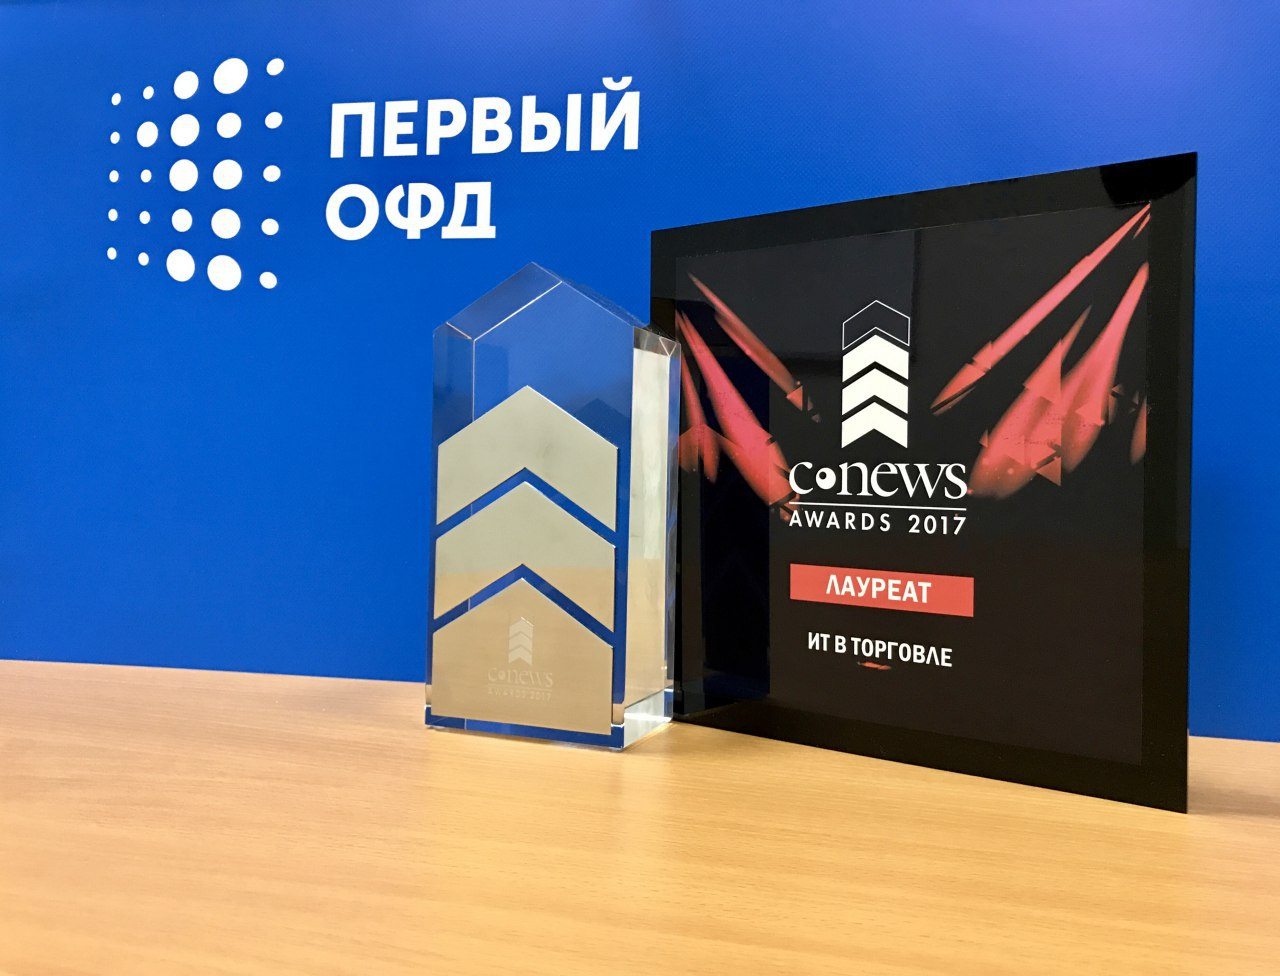 Первый ОФД. CNEWS Awards logo. Сайт офд 1